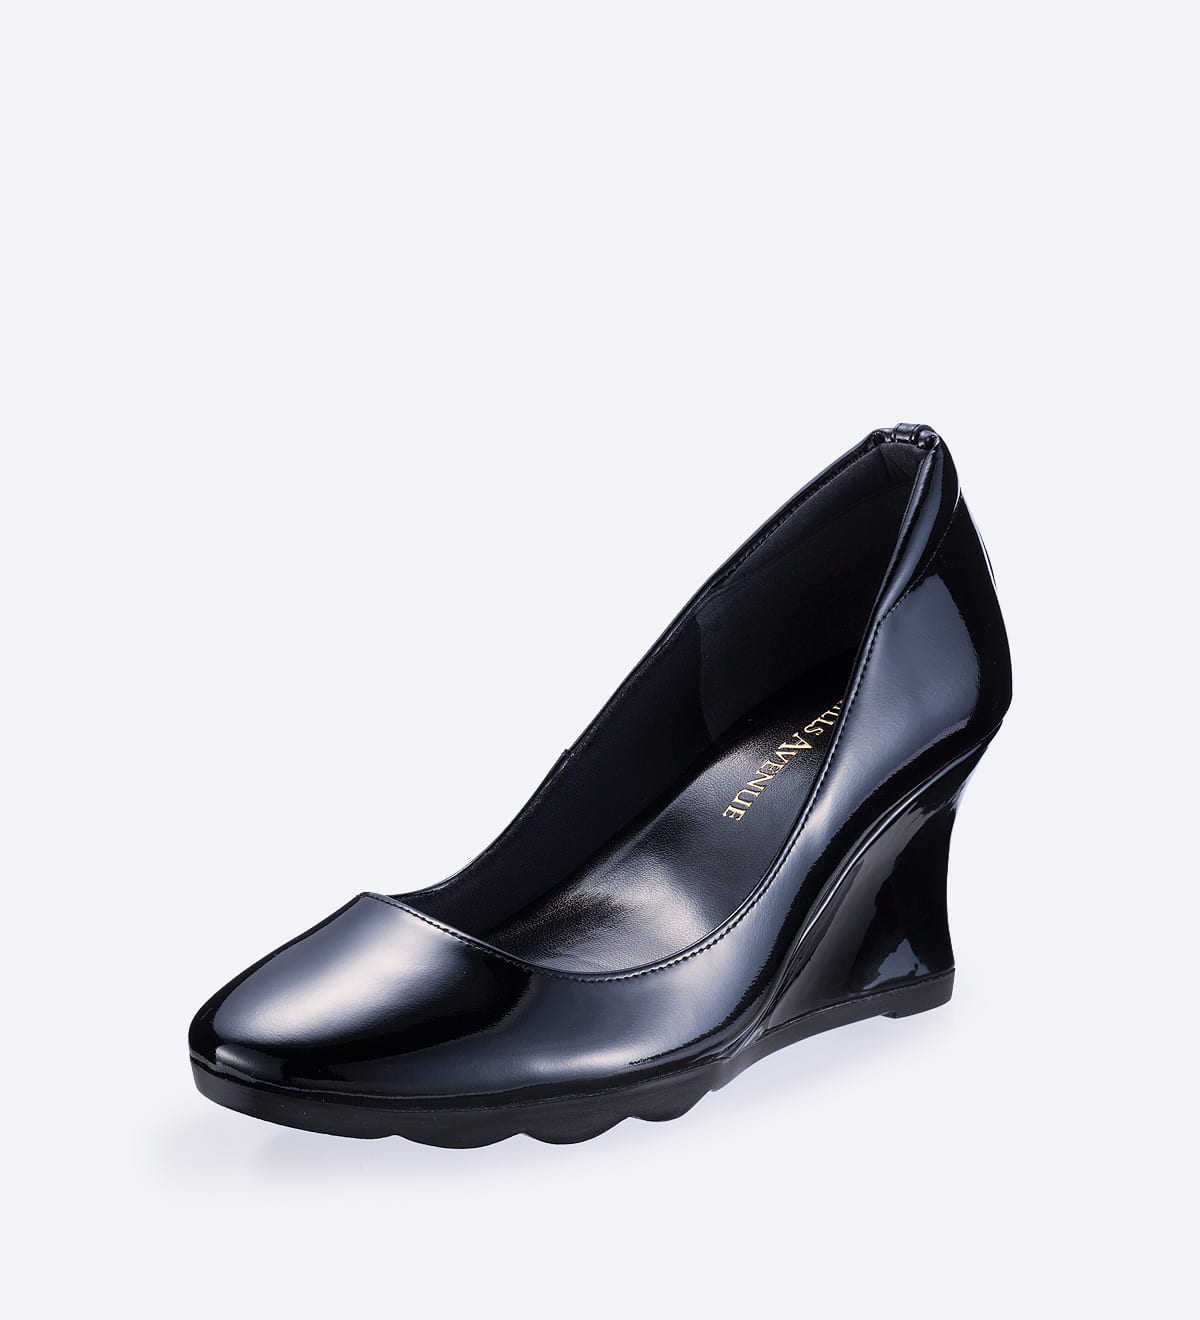 高級品市場 【新品】ヒルズアヴェニュー 25cm パンプス 靴 